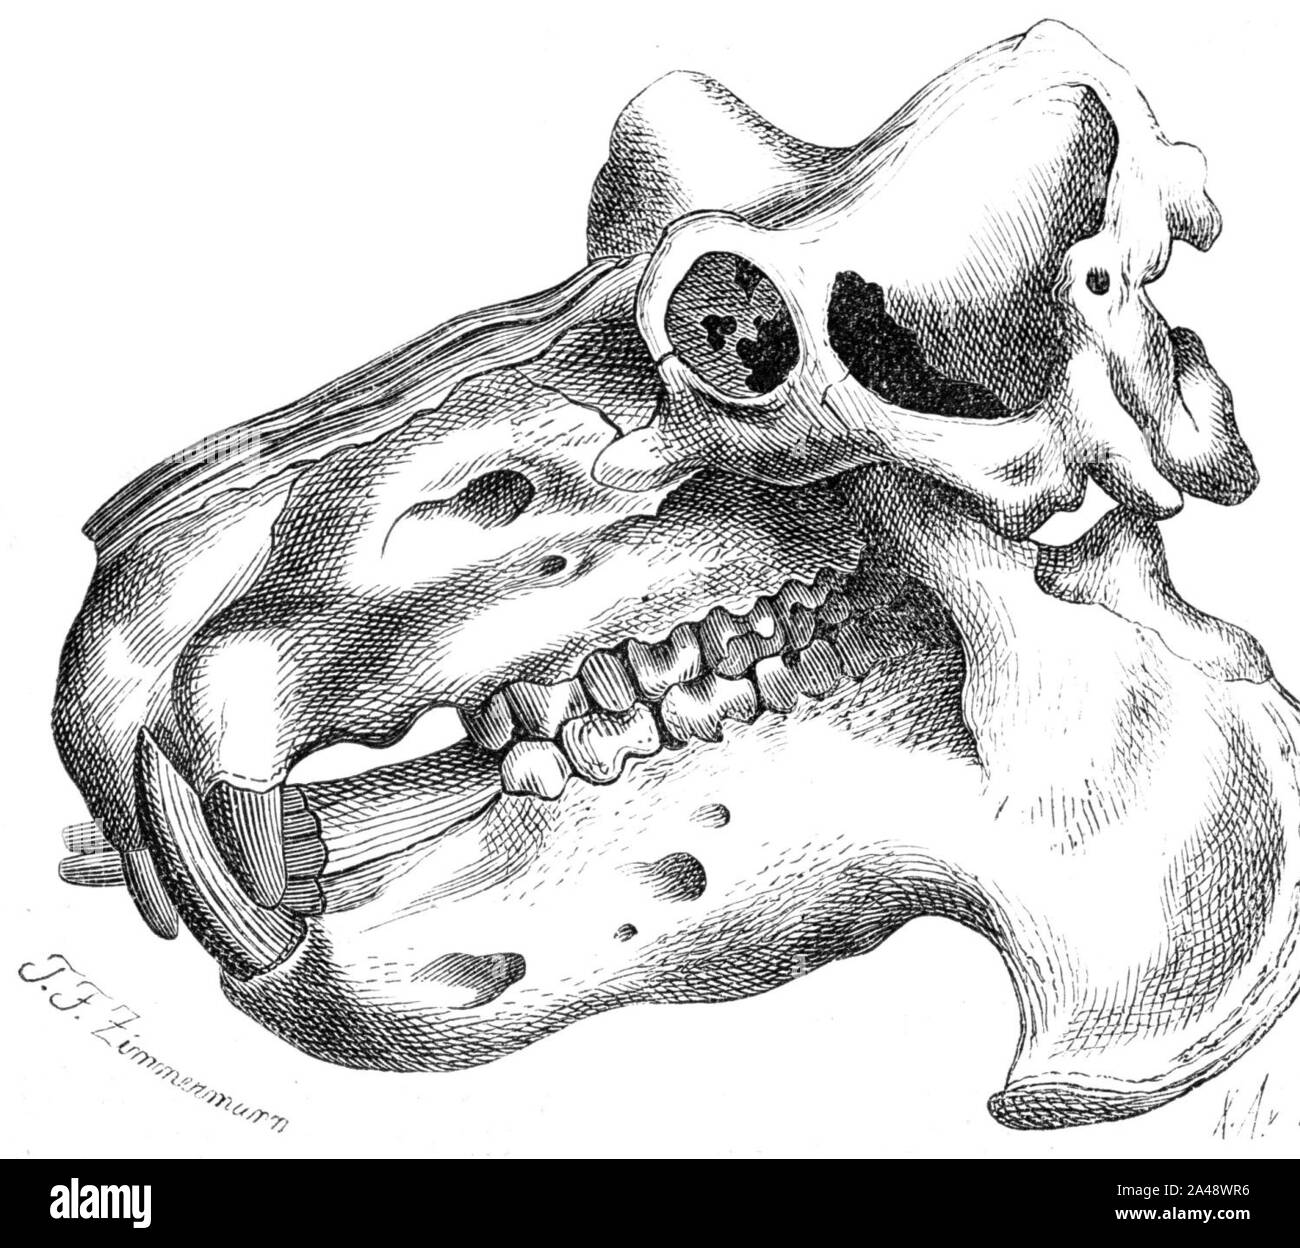 Flusspferd Kopfskelett-drawing. Stock Photo